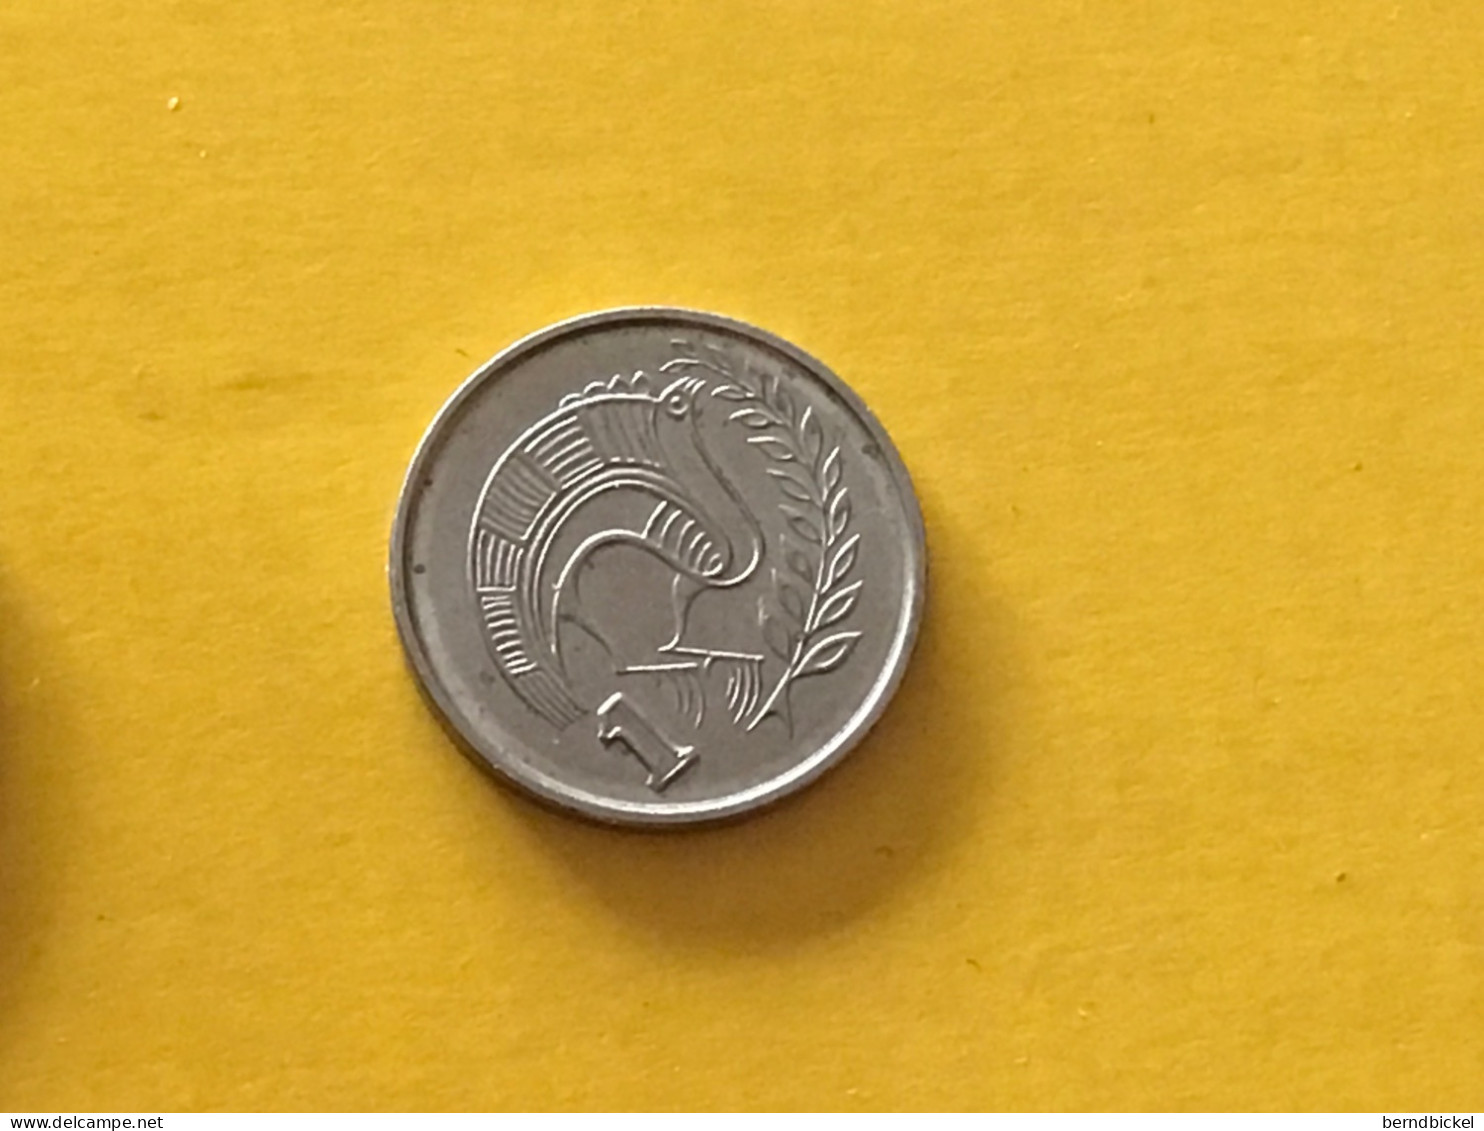 Münze Münzen Umlaufmünze Zypern 1 Cent 1998 - Zypern